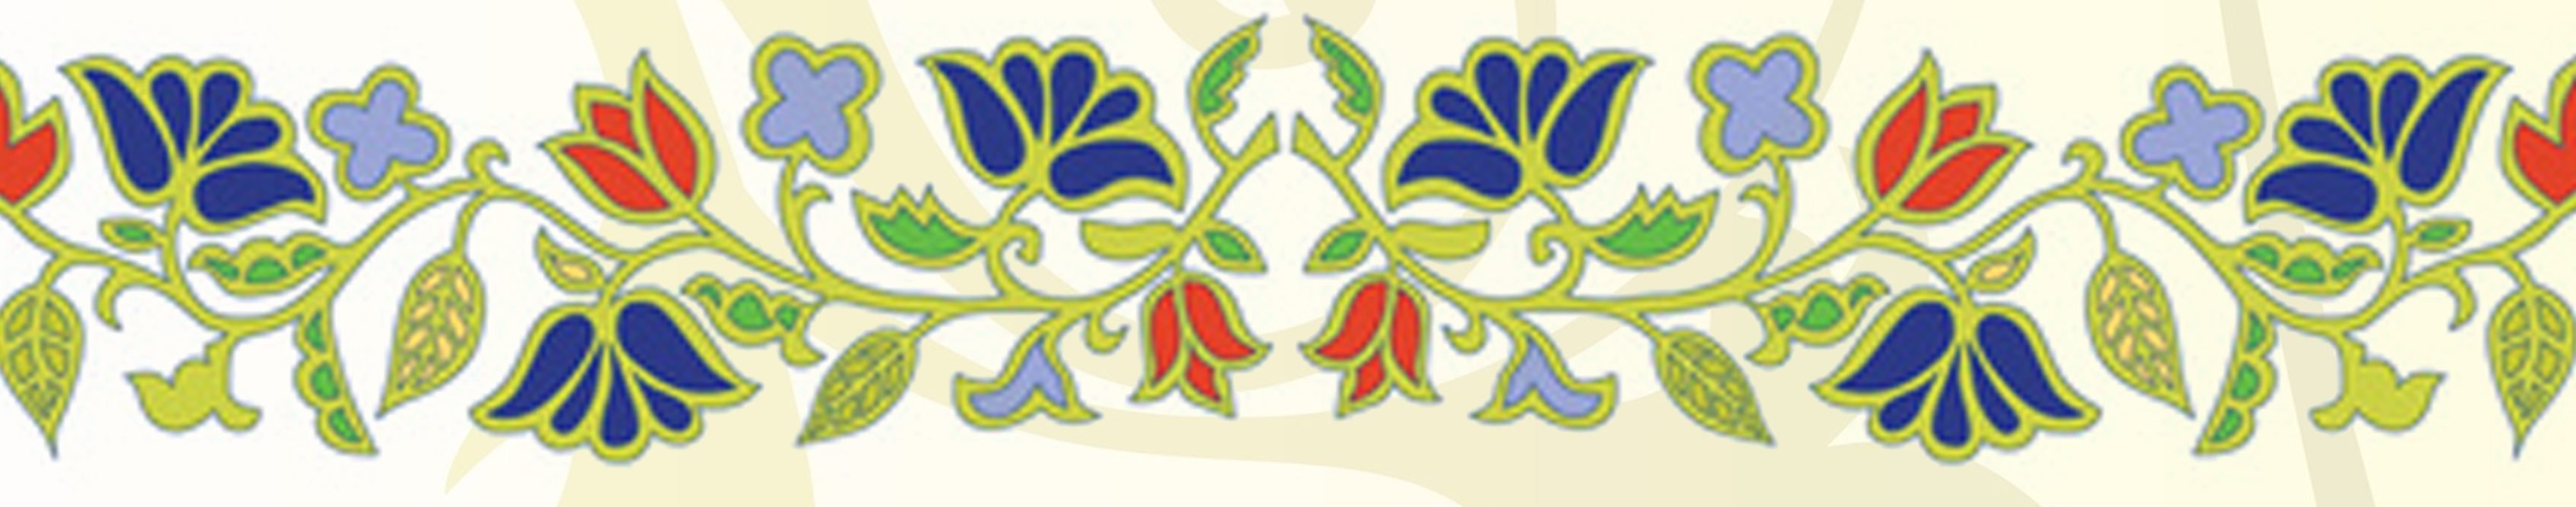 Цветочно растительный орнамент татарский